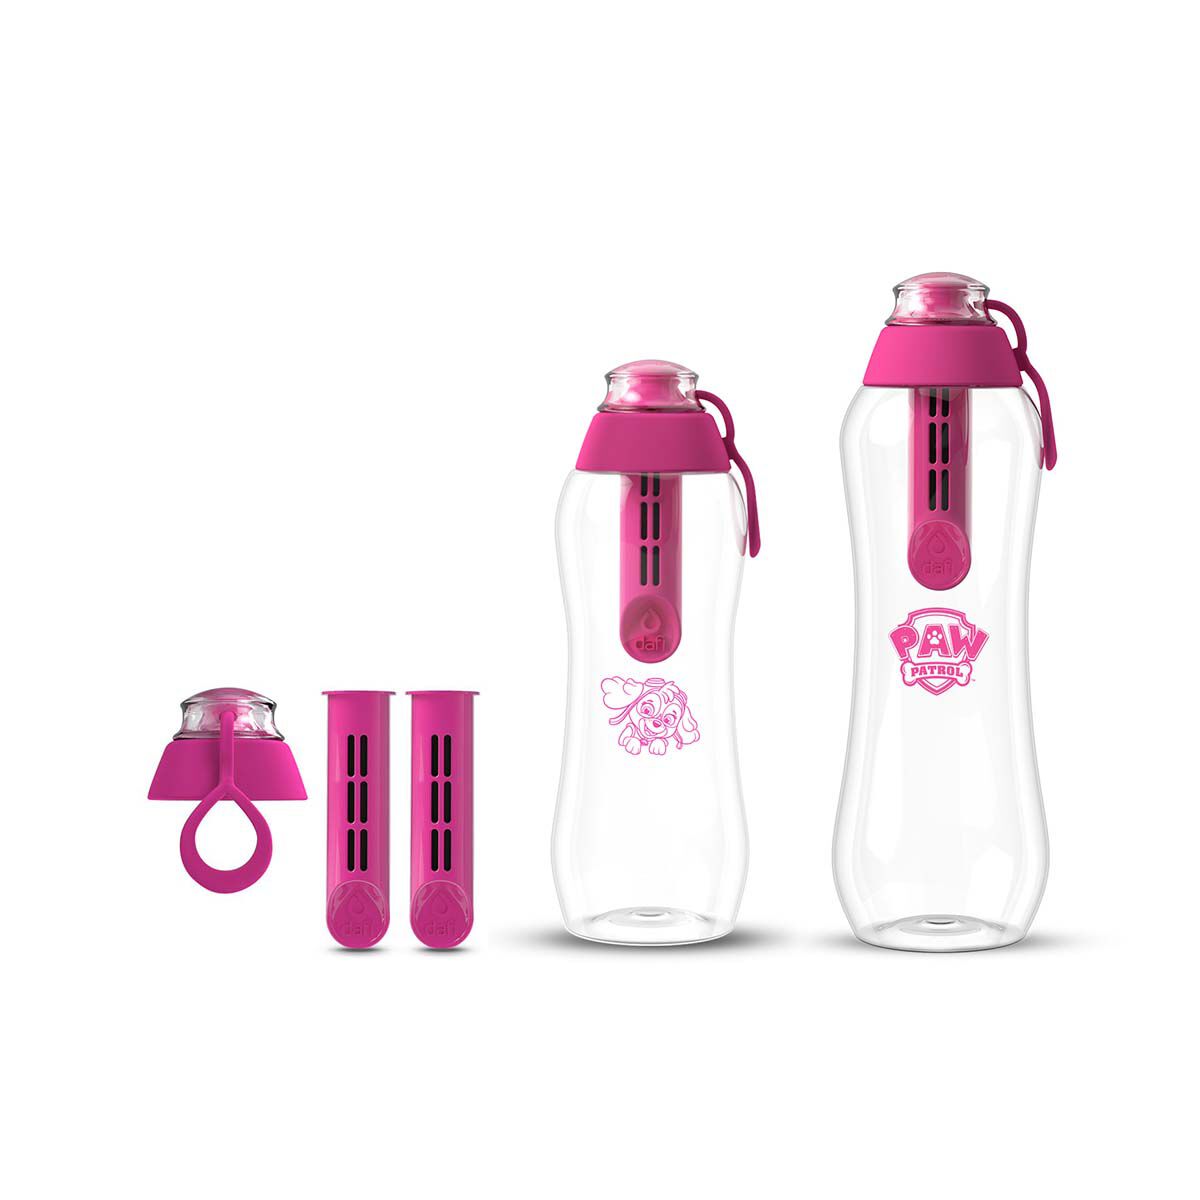 цена Набор из бутылок с угольным фильтром Dafi Psi Patrol/Soft, 5 предметов, розовый